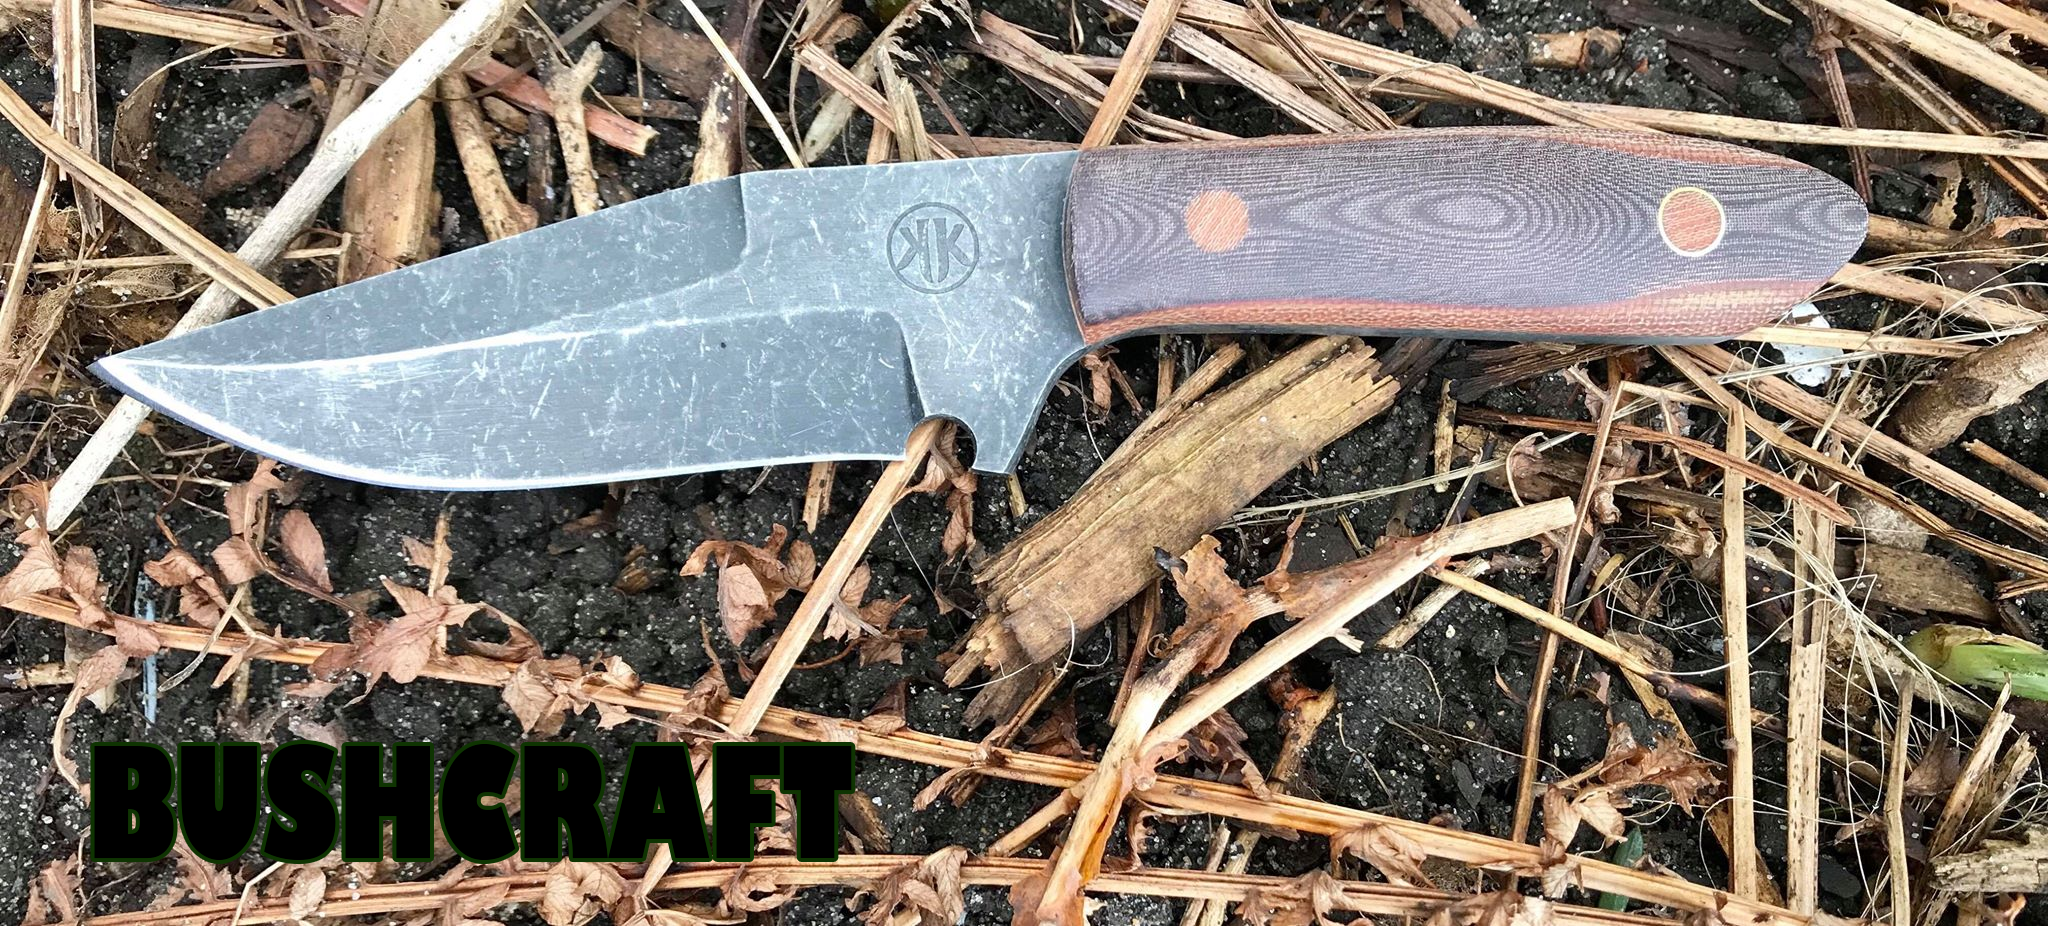 Bushcraft Knives - WoK & EDCGH